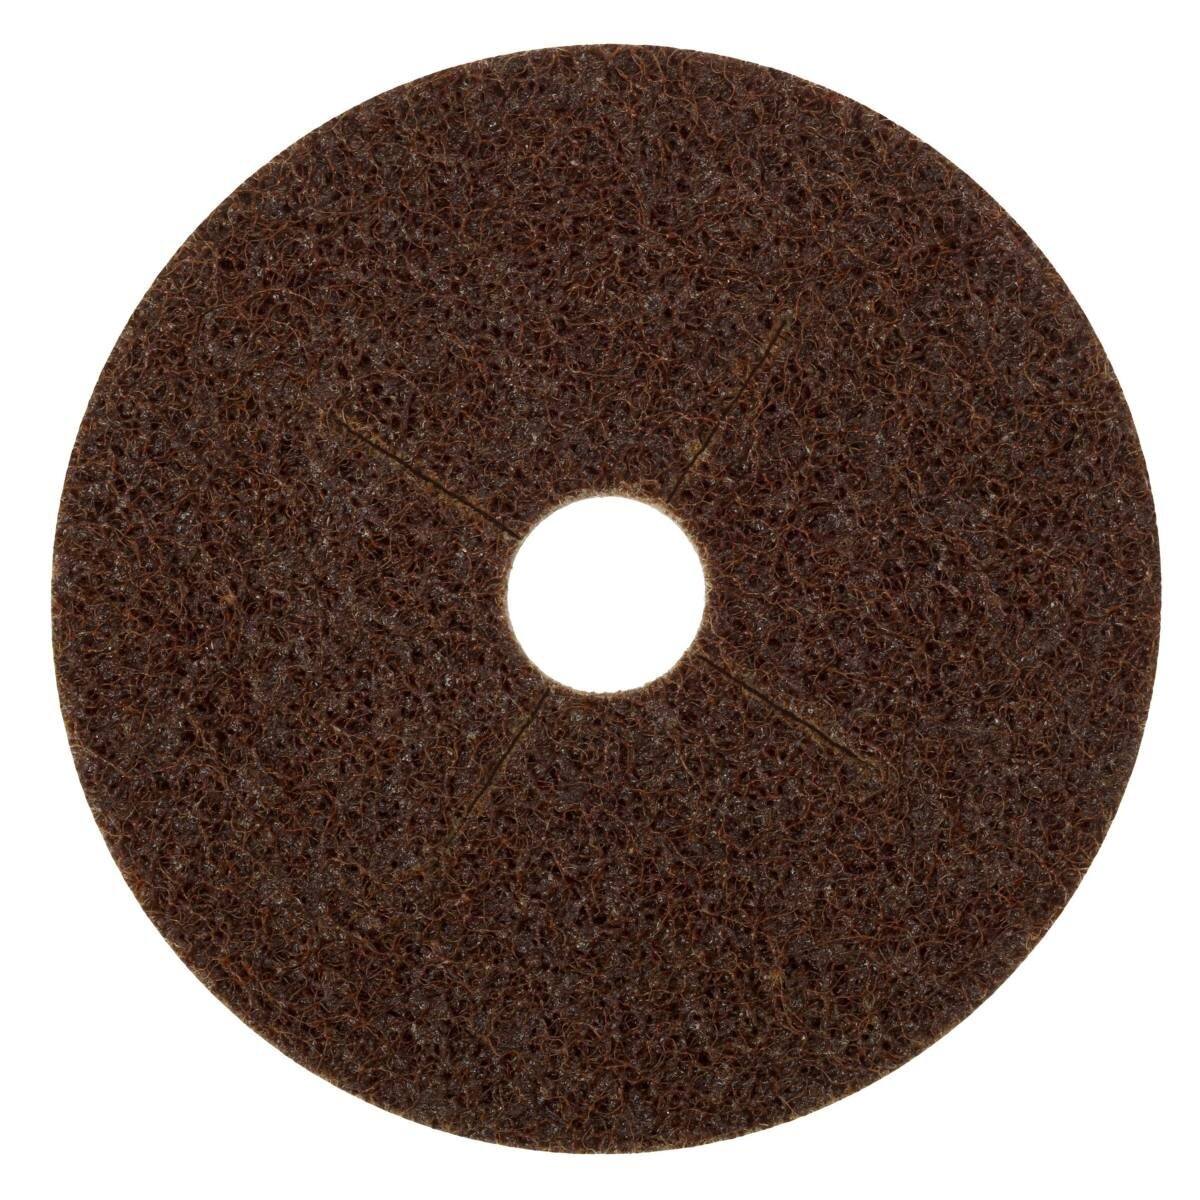 3M Scotch-Brite disco no tejido SC-DB con soporte de fibra, 178 mm, 22 mm, A, grueso #12023